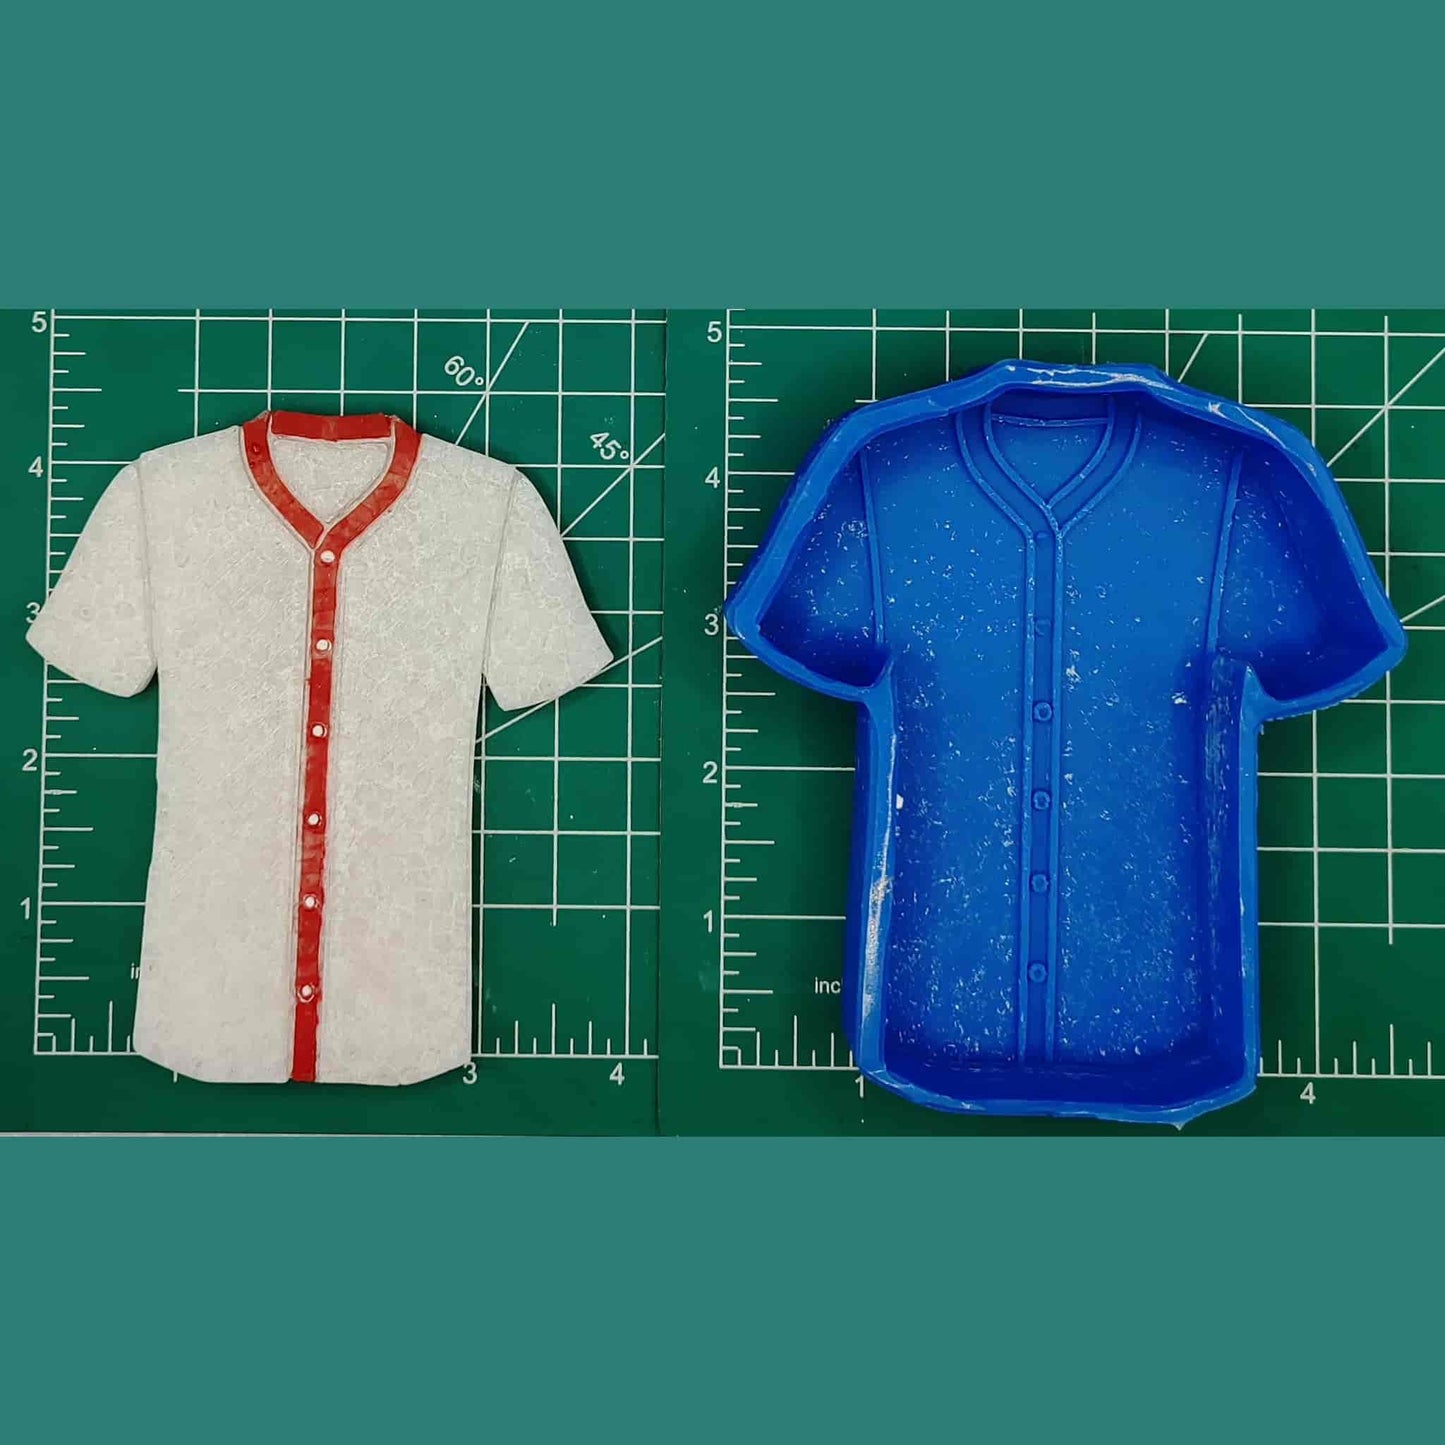 baseball jersey sewing pattern